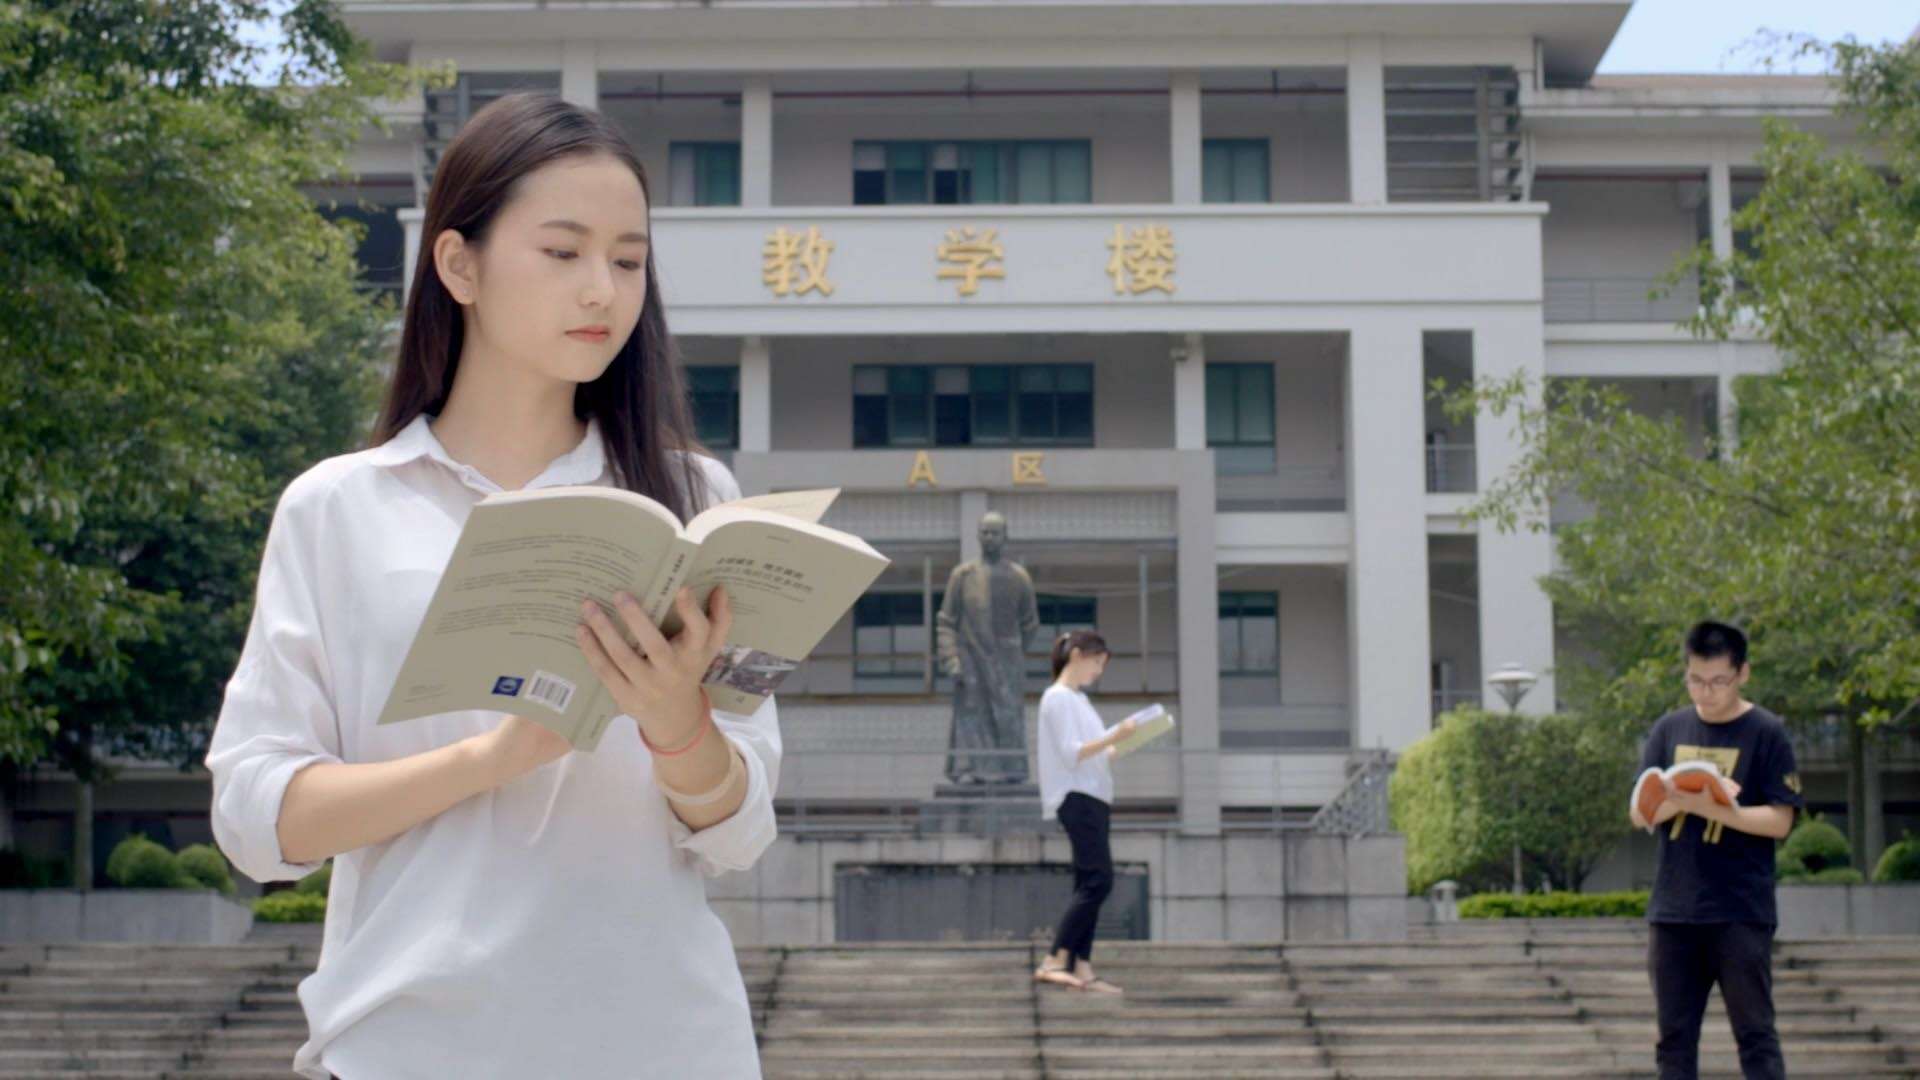 《未来我定义》华南师范大学2017年招生宣传形象片